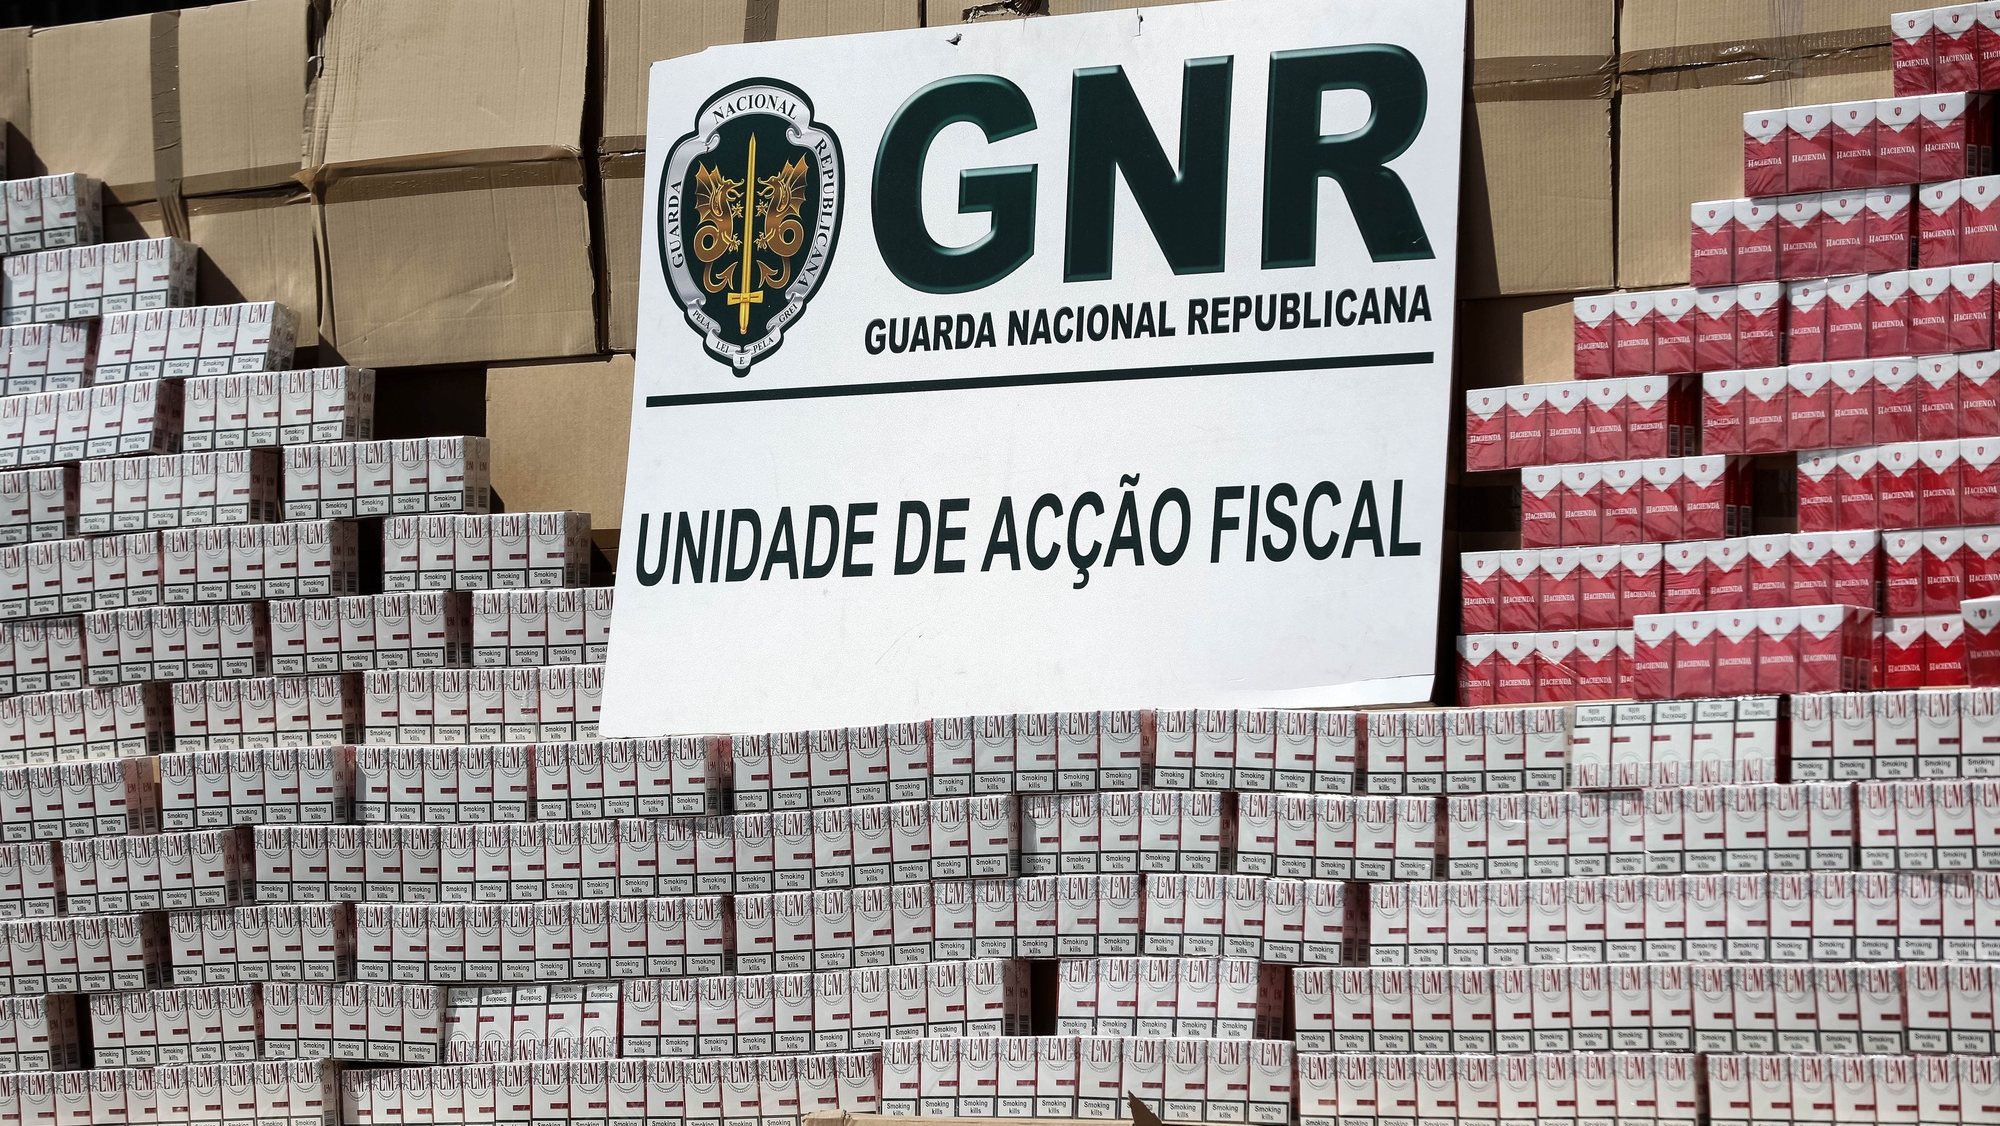 Quase dois milhões de cigarros de contrabando apreendidos pela Unidade de Ação Fiscal da GNR em Montalegre (Vila Real), numa operação que envolveu buscas a um local de apoio a uma organização criminosa, nas instalações do Destacamento de Ação Fiscal de Coimbra, 20 de maio de 2019. PAULO NOVAIS/LUSA